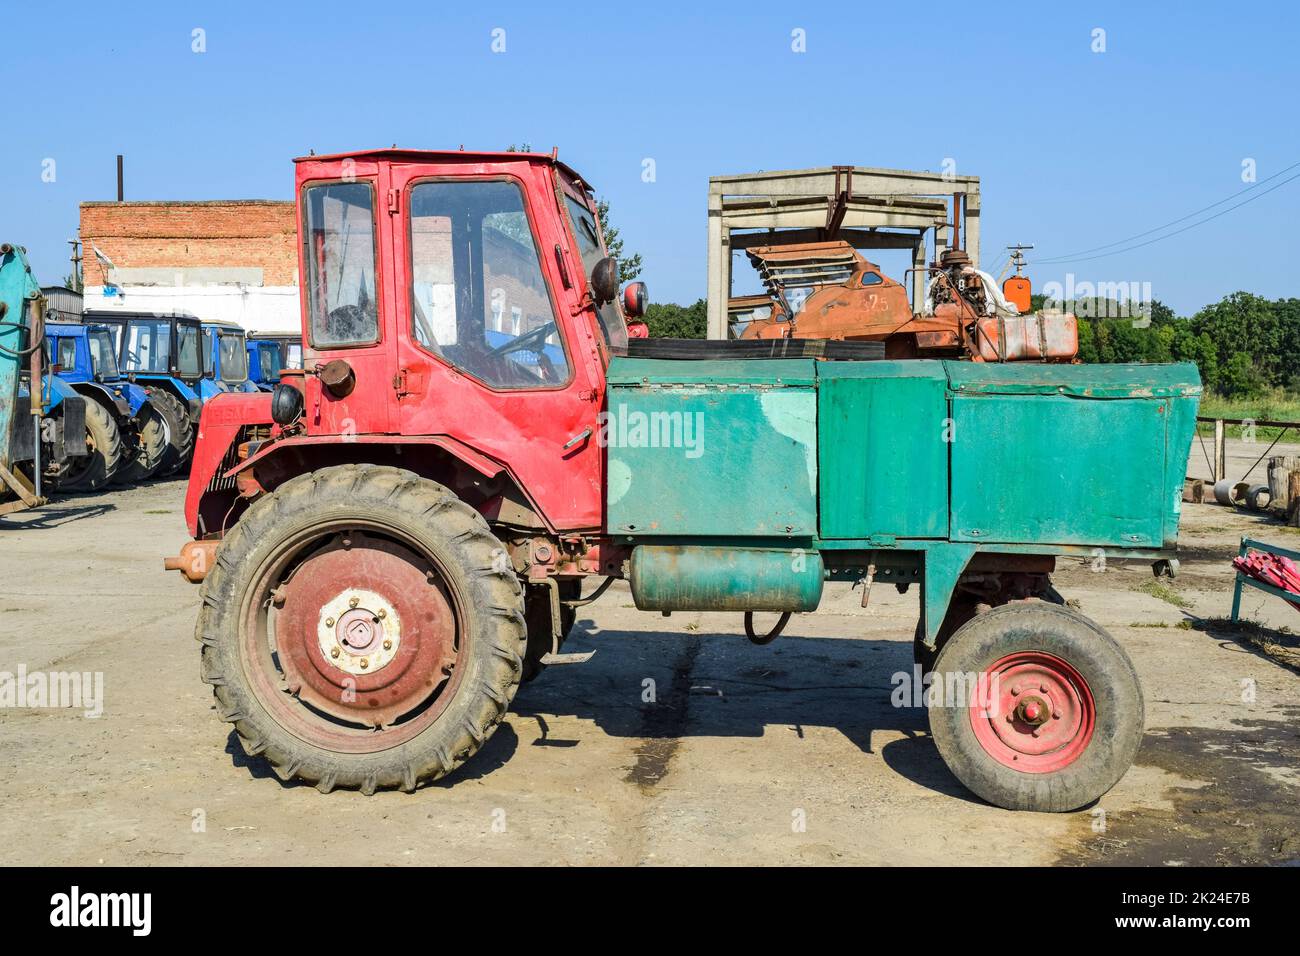 Russland, Temryuk - 15 Juli 2015: Landmaschinen Traktor. Traktor Bettler. Traktor mit den Körper. Das Bild war auf einem Parkplatz von Tra genommen Stockfoto